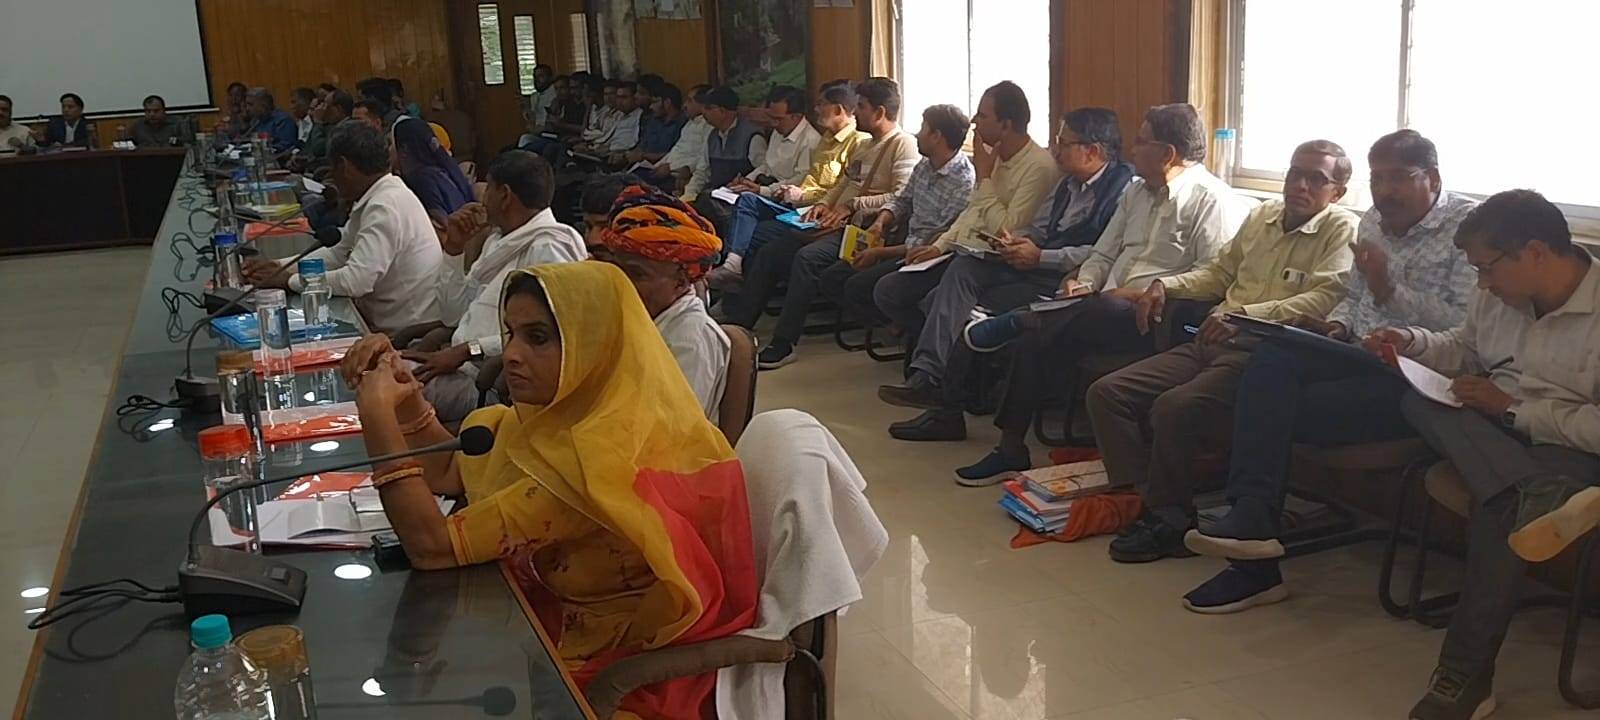 चित्तौड़गढ़ - जिला परिषद की बैठक में नहीं जुटा कोरम, भाजपा समर्थित है बोर्ड, विधायक जीनगर ले रहे बैठक